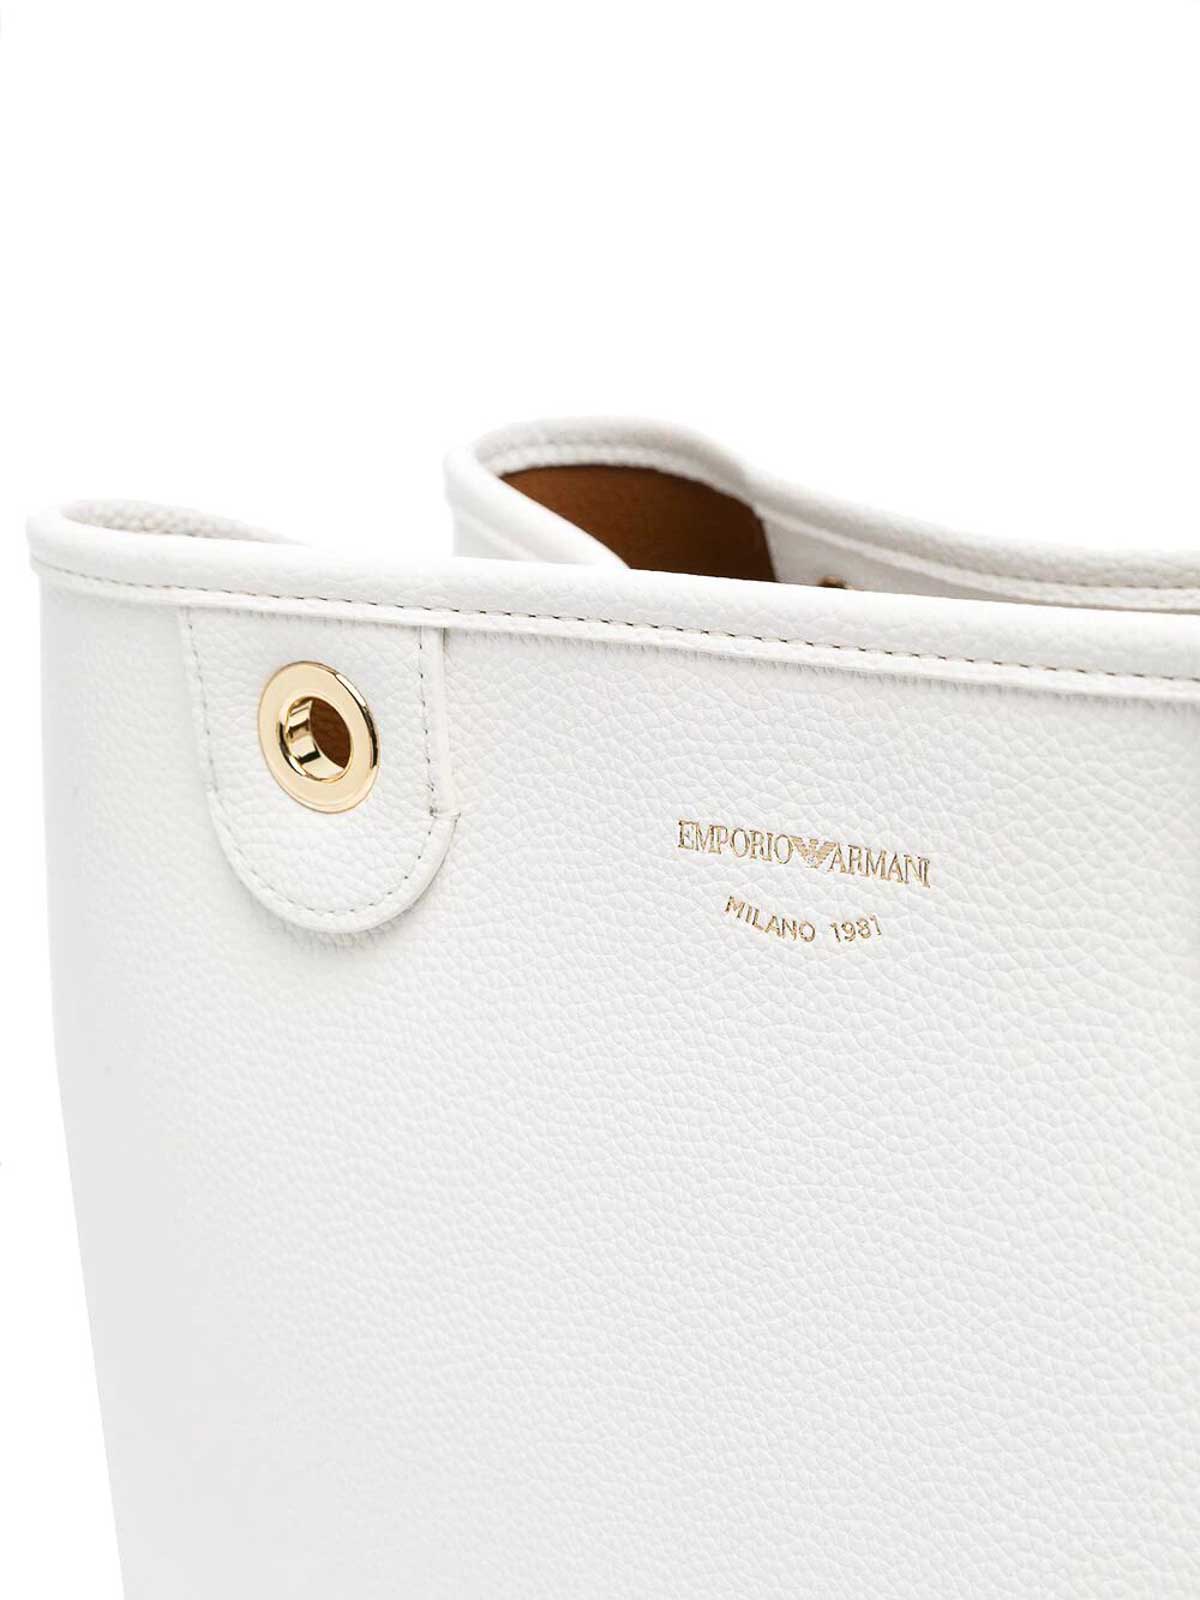 Shop Emporio Armani Shopping Bag In White